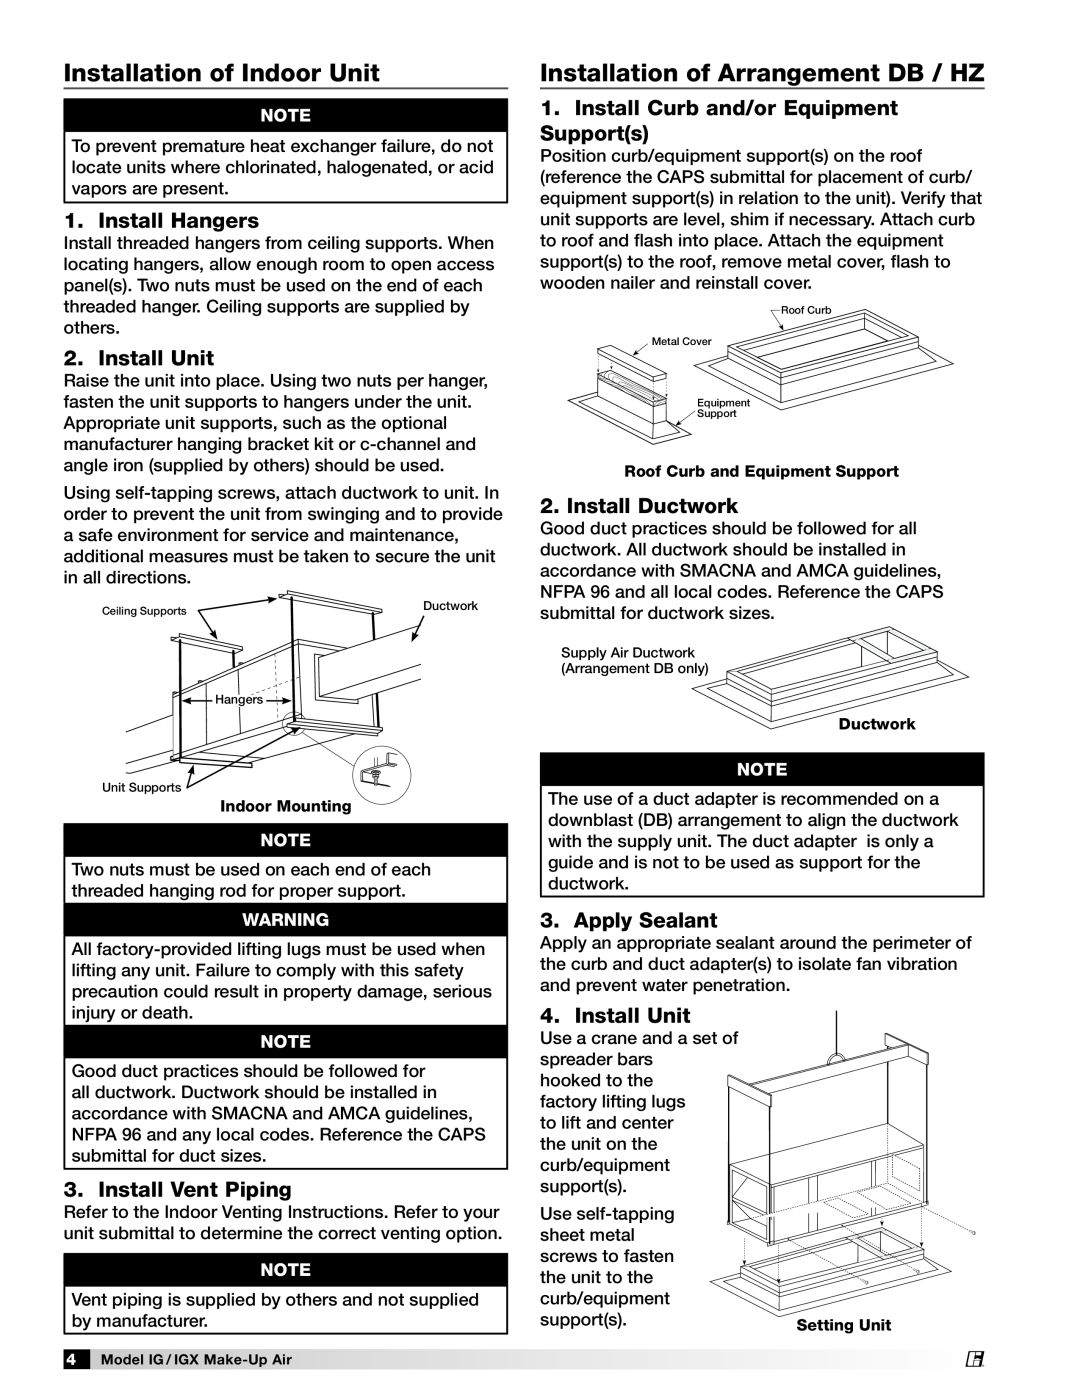 Greenheck Fan 470656 manual Installation of Indoor Unit, Installation of Arrangement DB / HZ, Install Hangers, Install Unit 